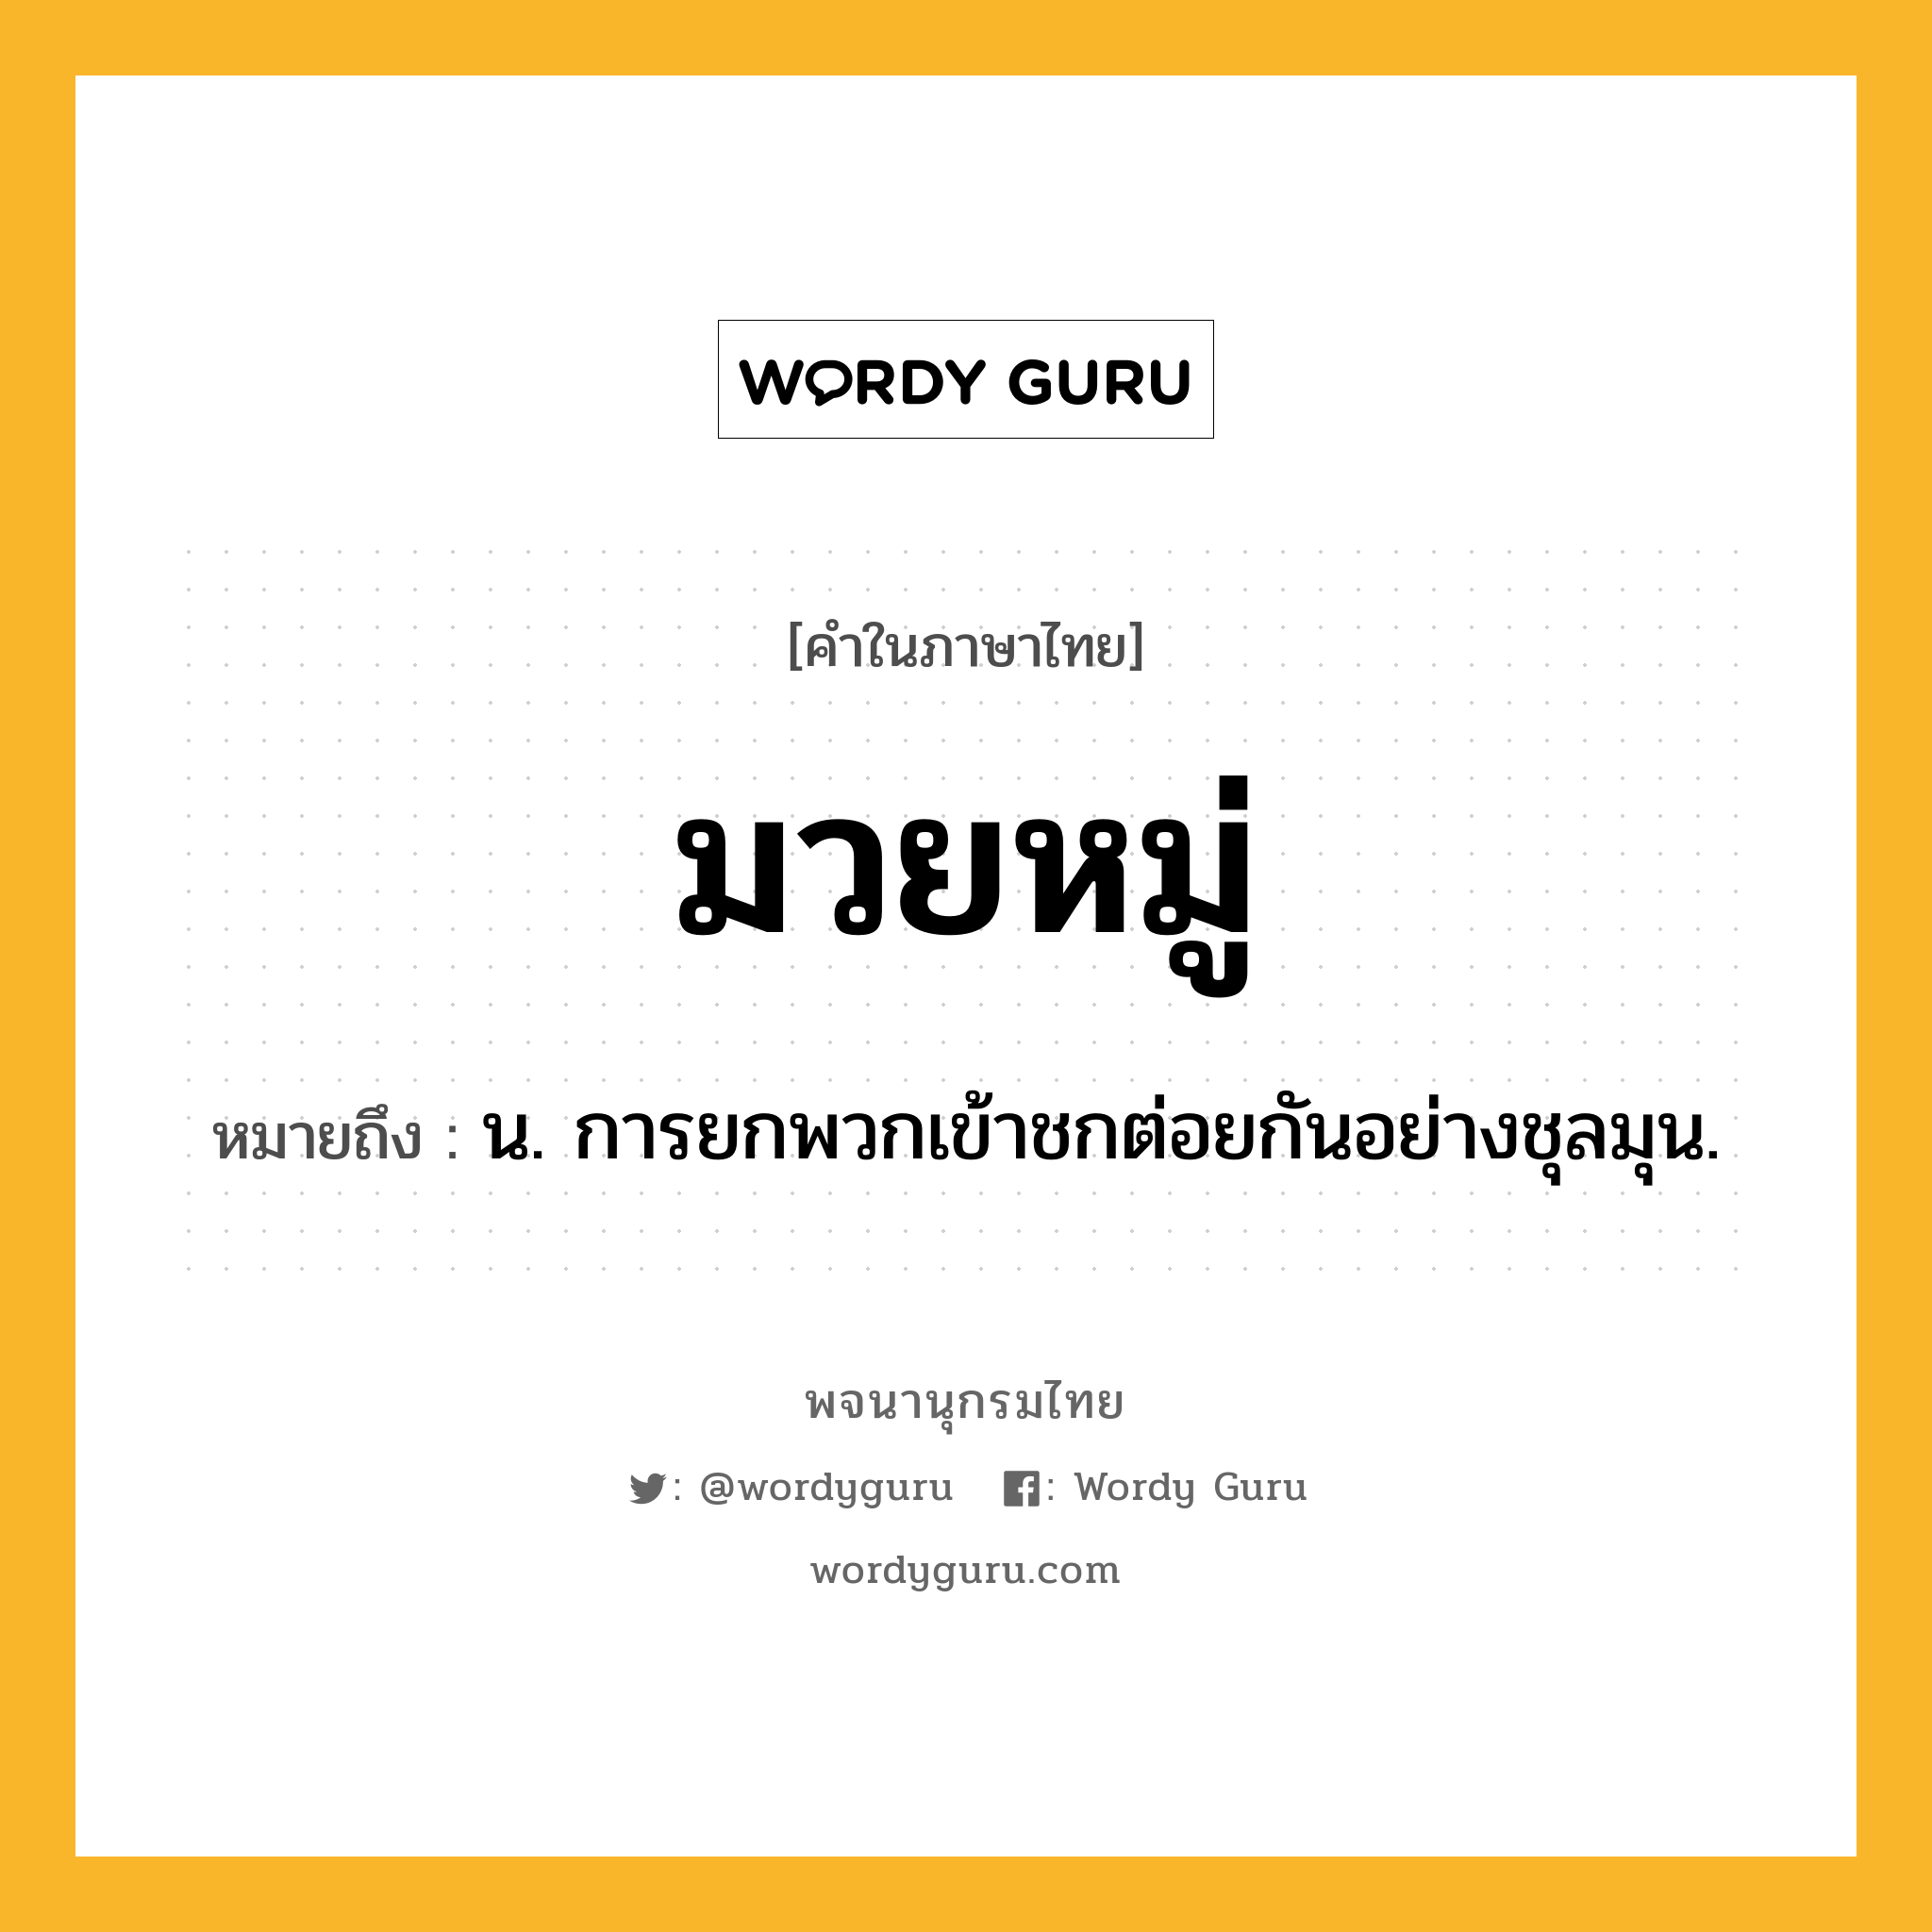 มวยหมู่ ความหมาย หมายถึงอะไร?, คำในภาษาไทย มวยหมู่ หมายถึง น. การยกพวกเข้าชกต่อยกันอย่างชุลมุน.